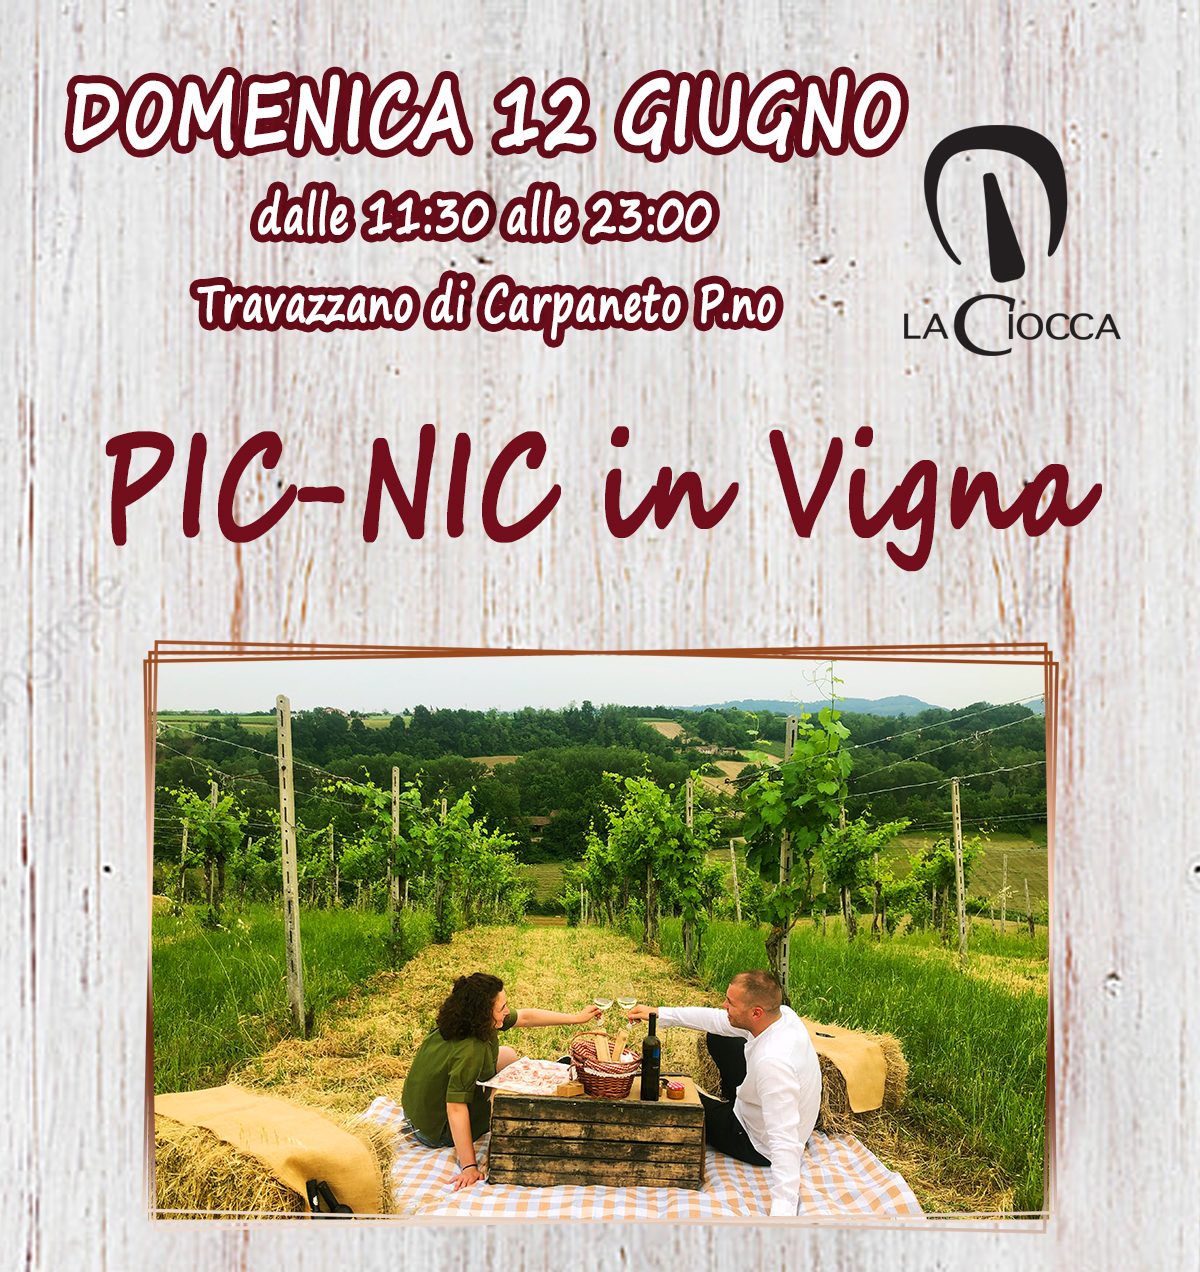 news_sito_picnic-in-vigna